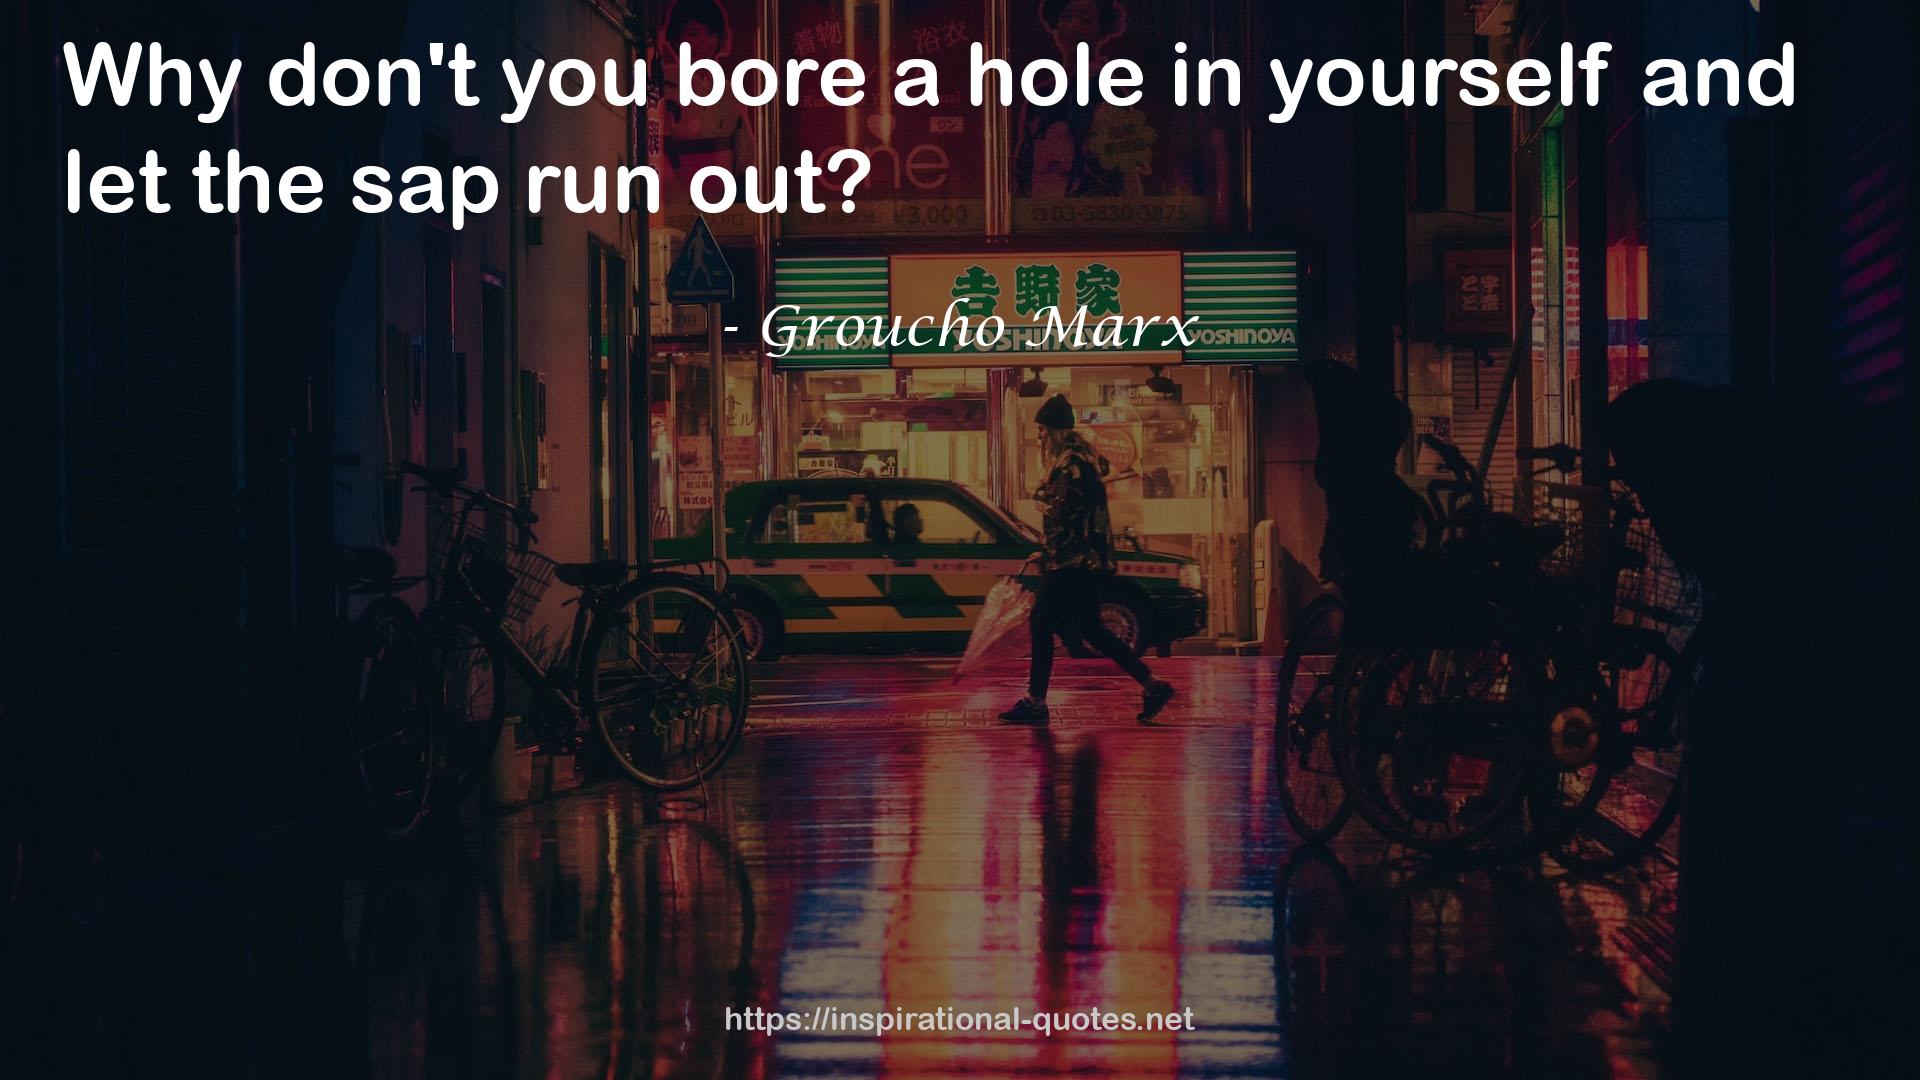 Groucho Marx QUOTES